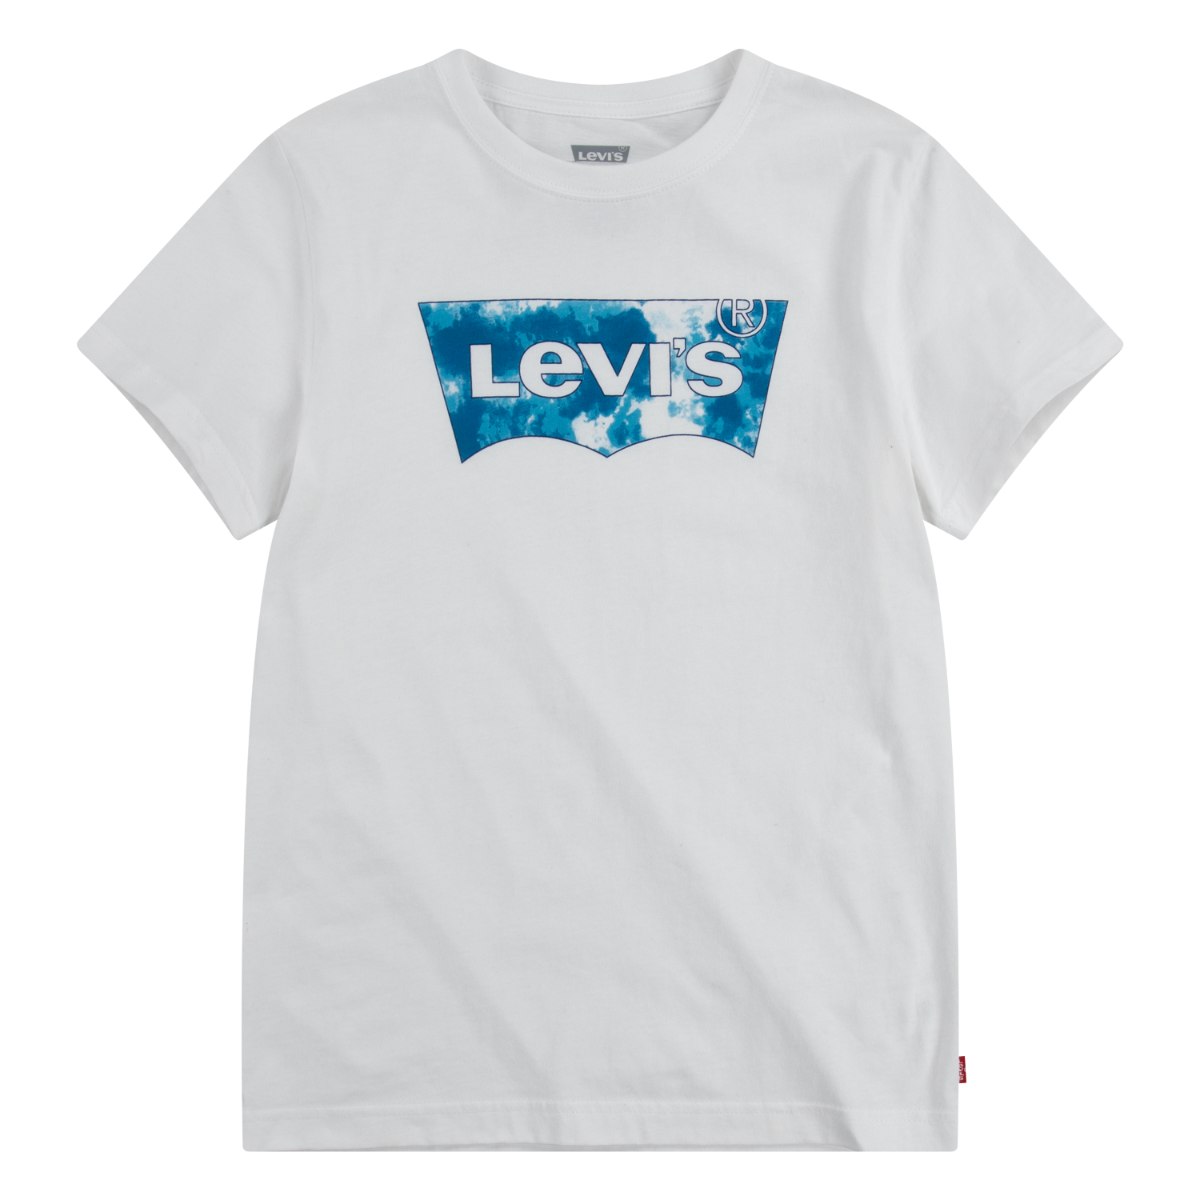 טי שירט LEVIS לבנה לוגו טאי דאי כחול - 1-4 שנים